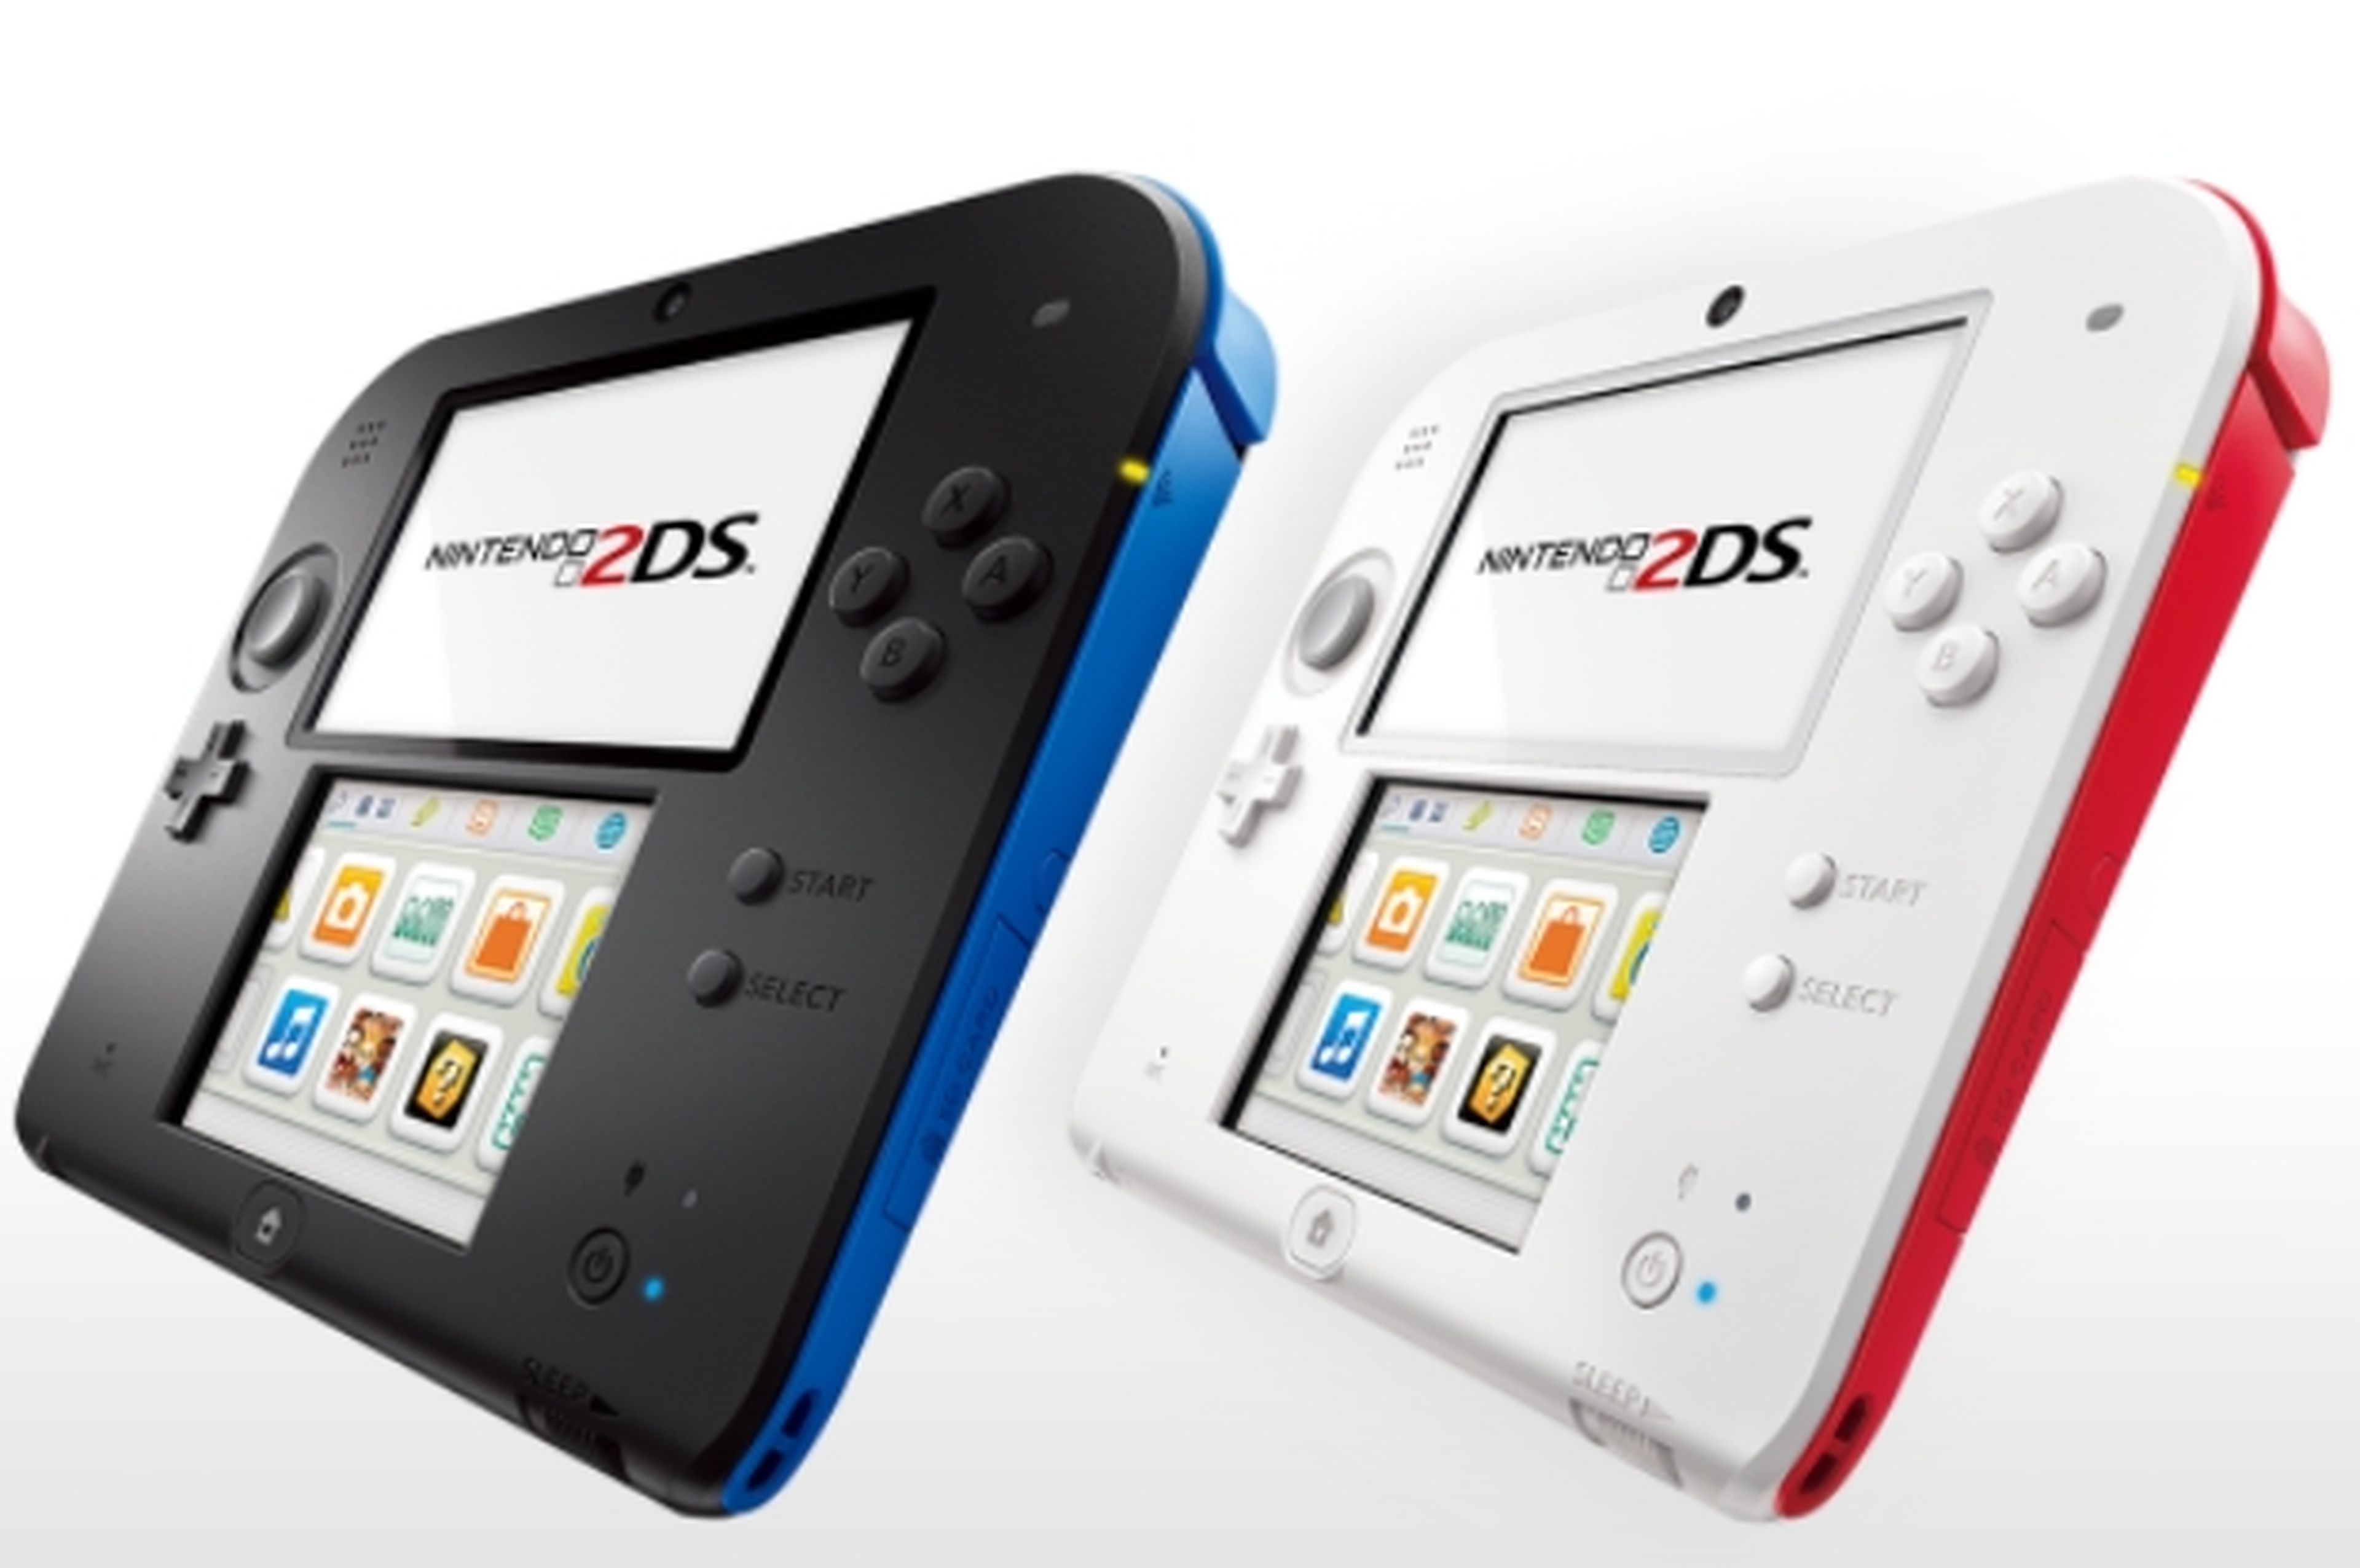 La nueva Nintendo 2DS, sin pantalla 3D, pensada para los niños